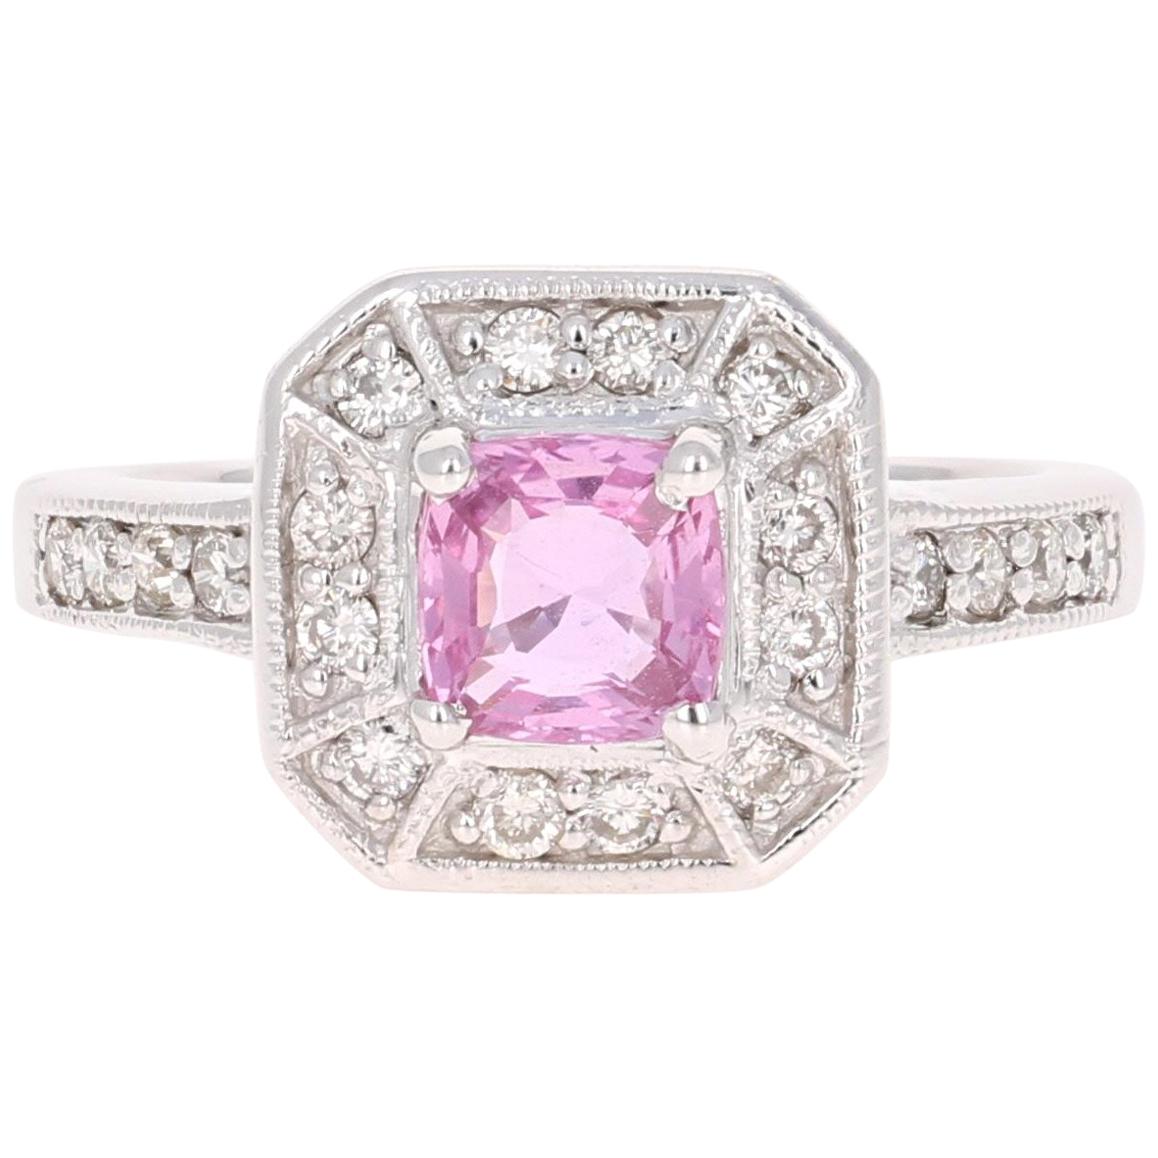 1.36 Carat Pink Sapphire Diamond 14 Karat White Gold Ring